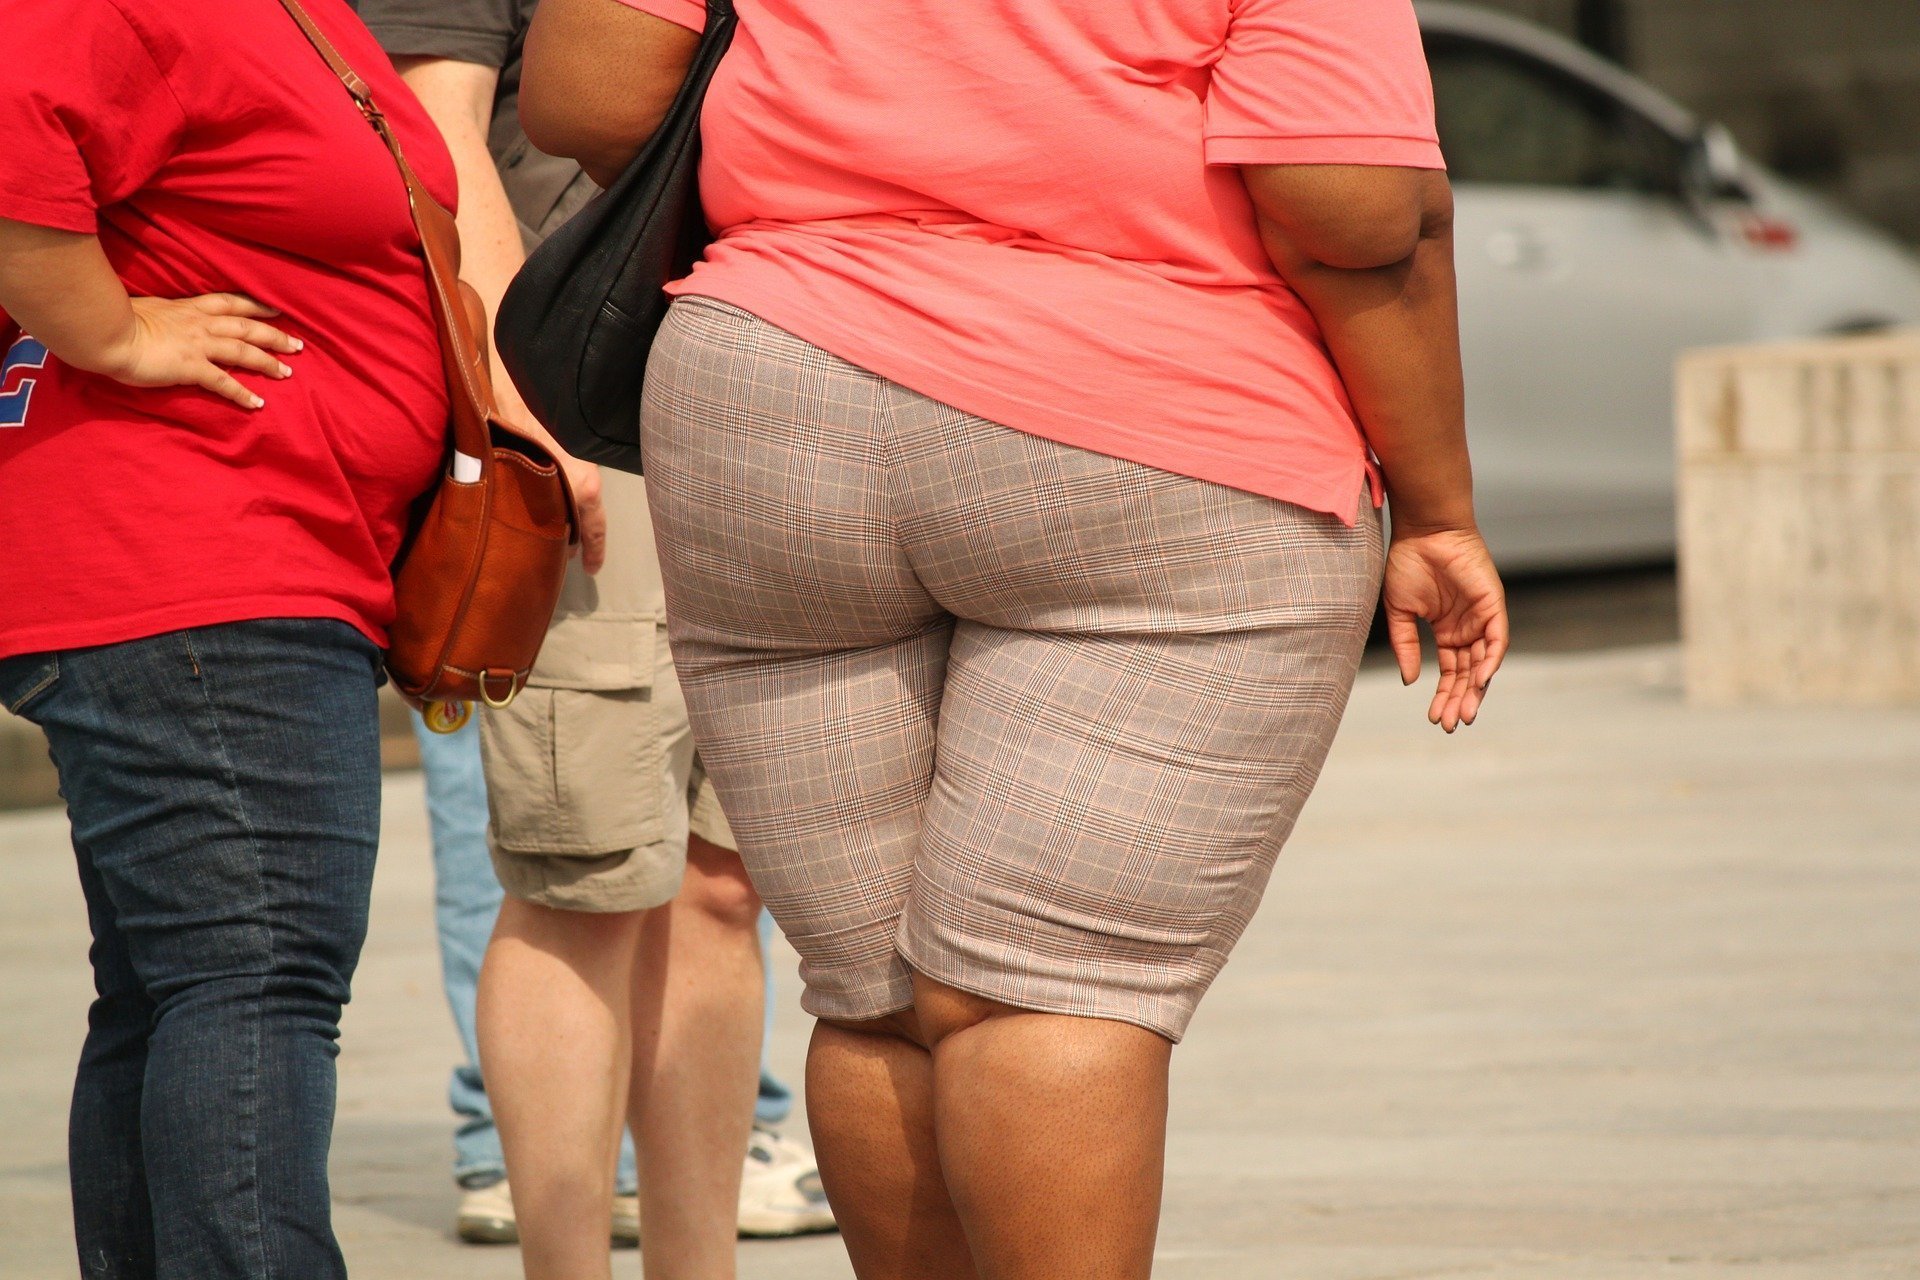 O mutație genetică rară îi ferește pe oameni de obezitate